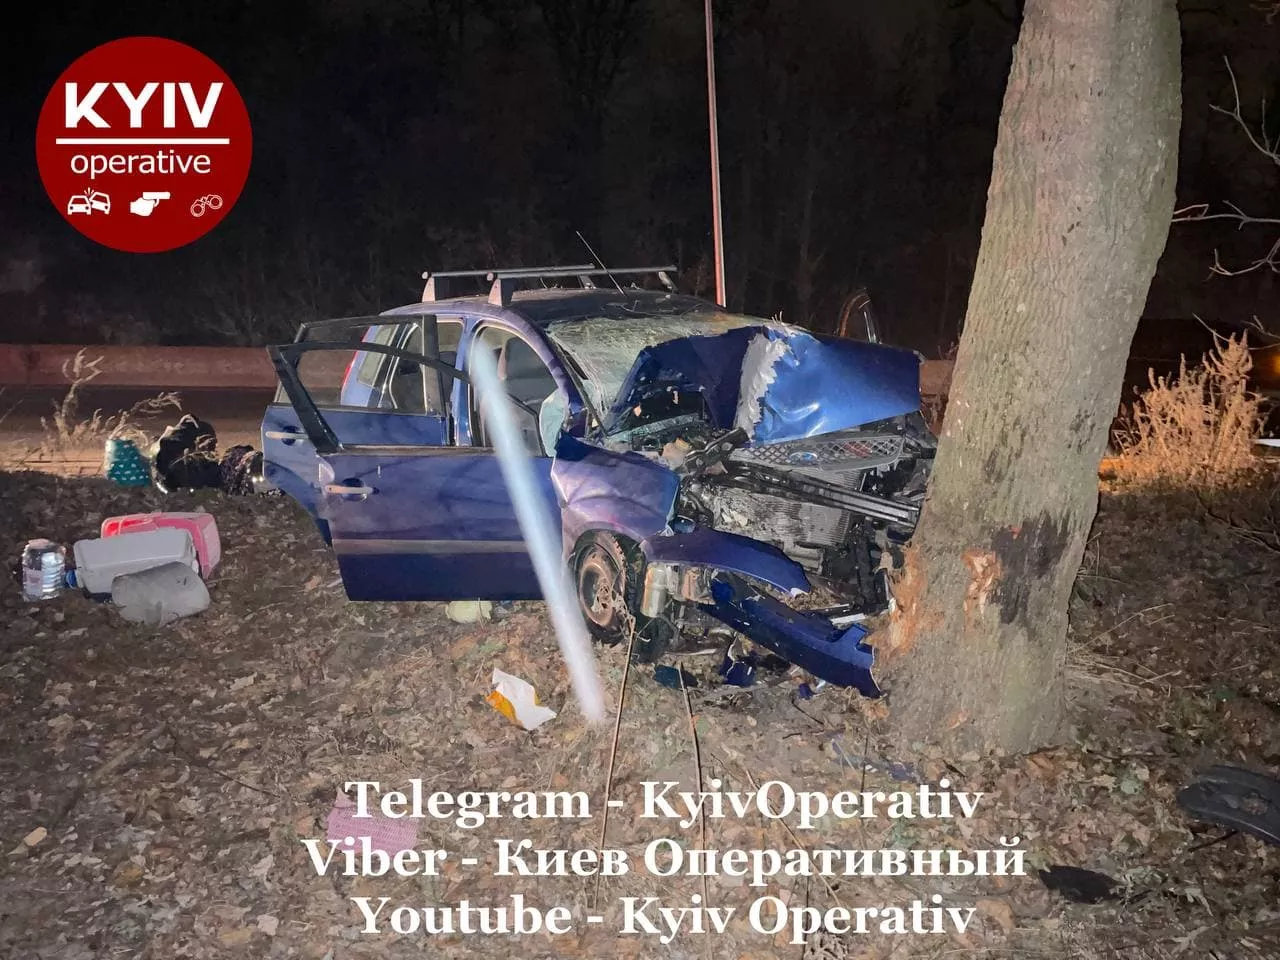 Автомобиль слетел с дороги и врезался в дерево/Фото: Telegram-канал Киев оперативный